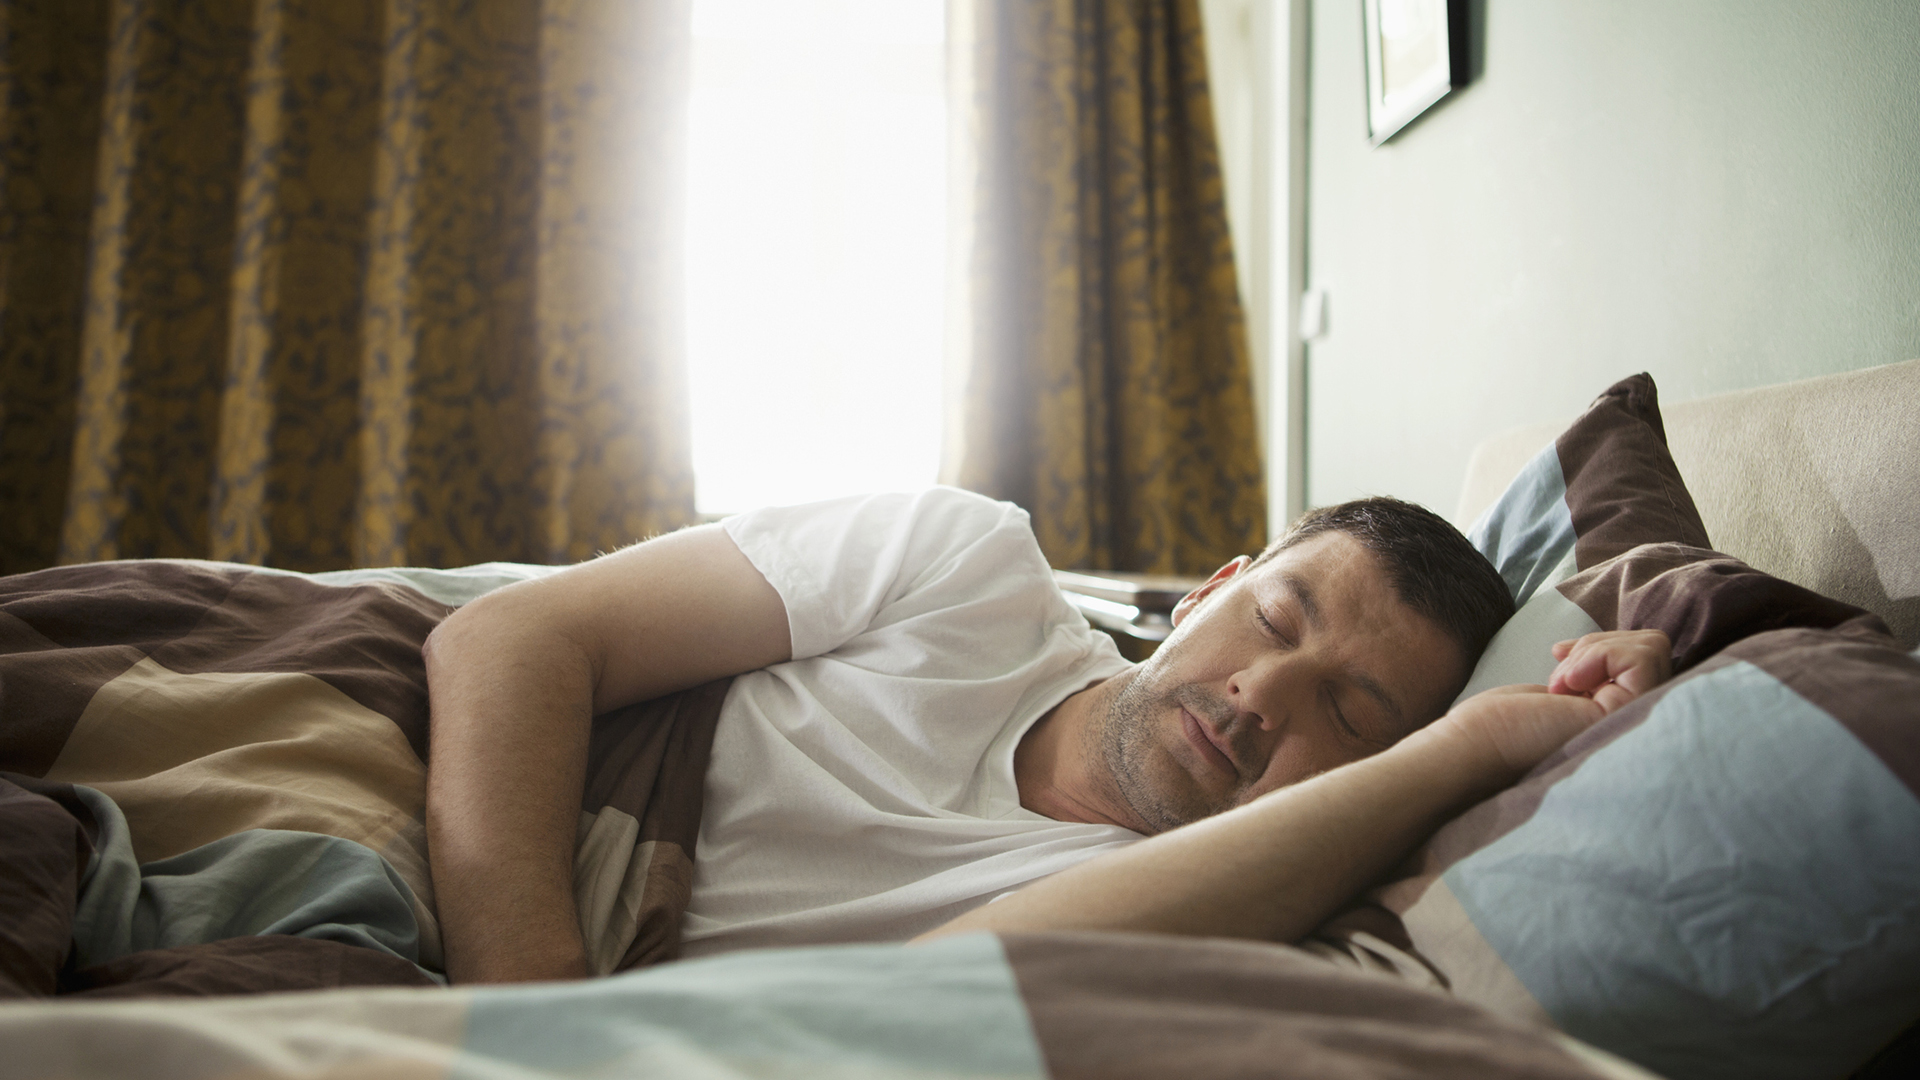 Dormir bien puede reducir el riesgo de asma